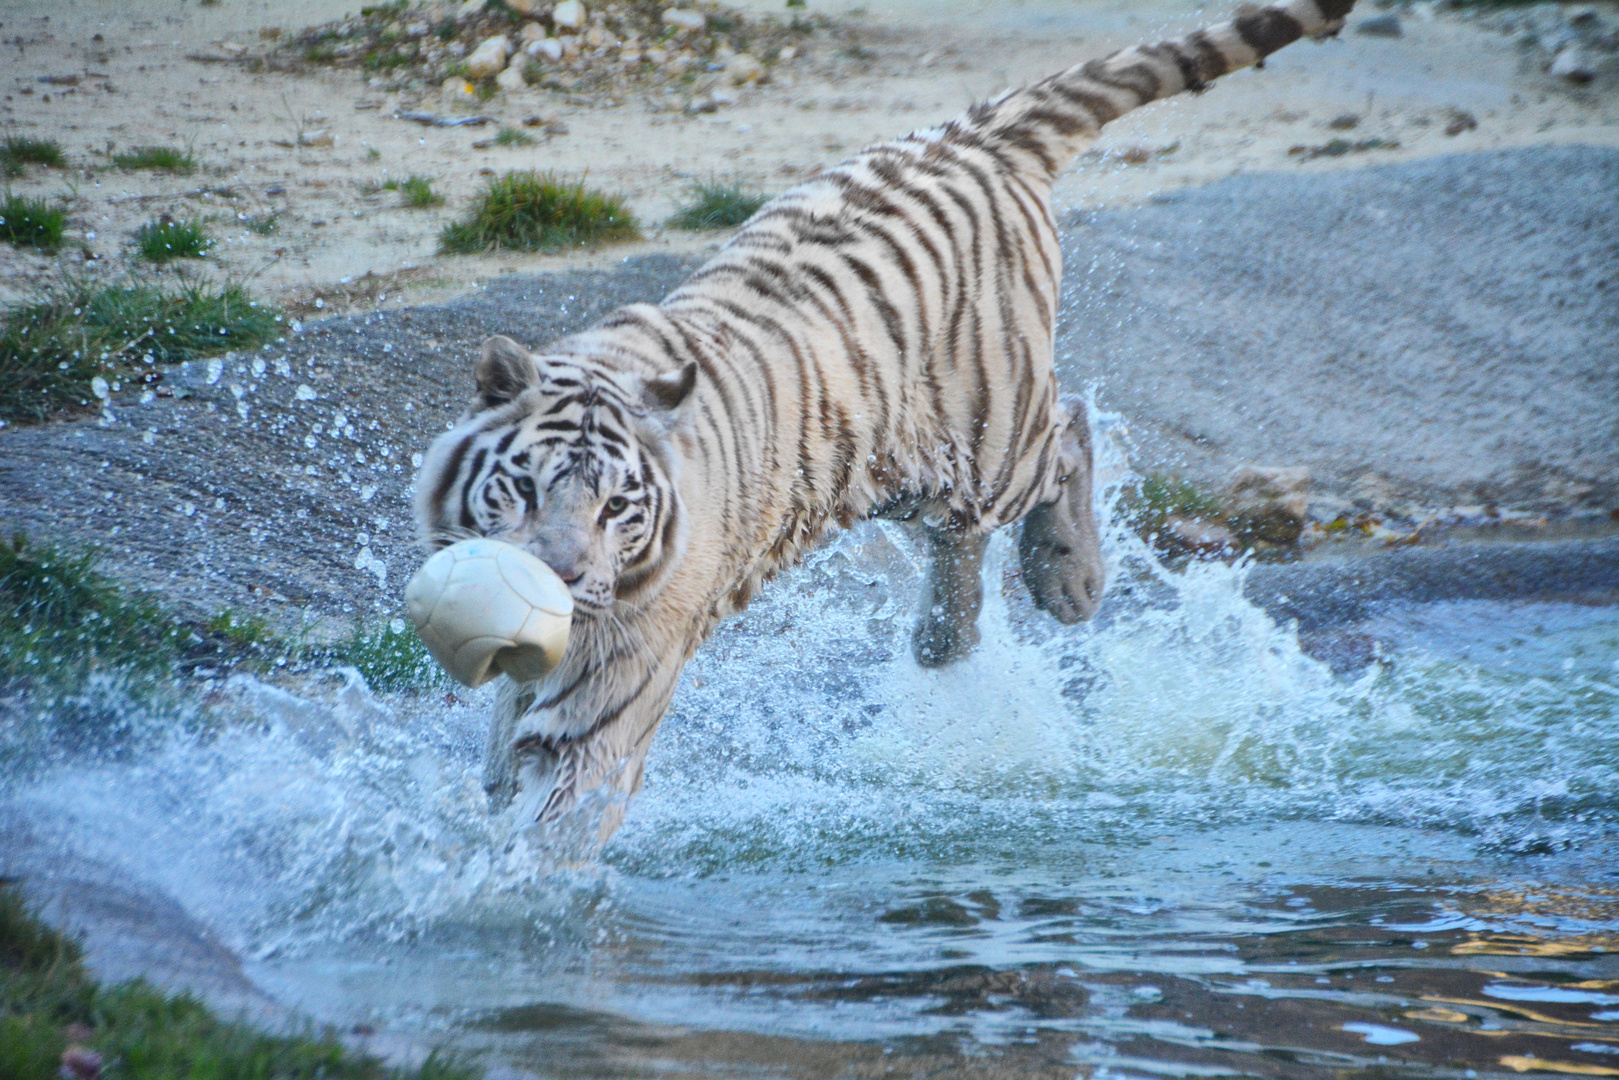 Weisser Tiger im Wasser